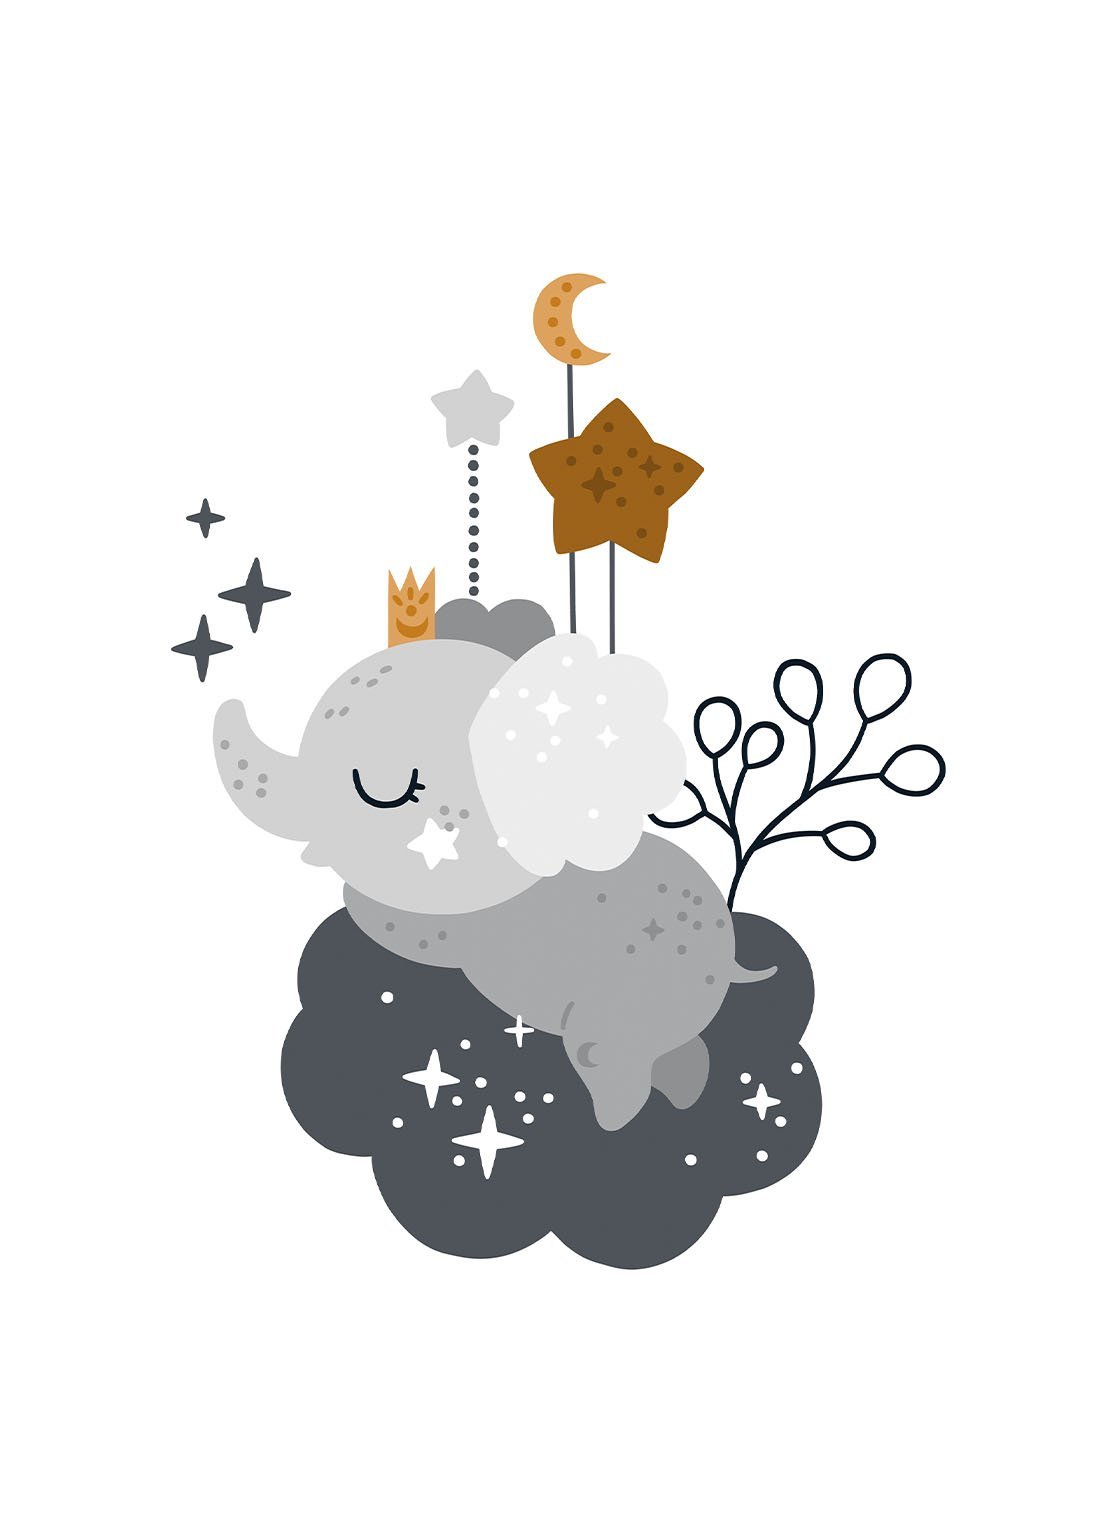 Sleeping Elephant - Avemfactory